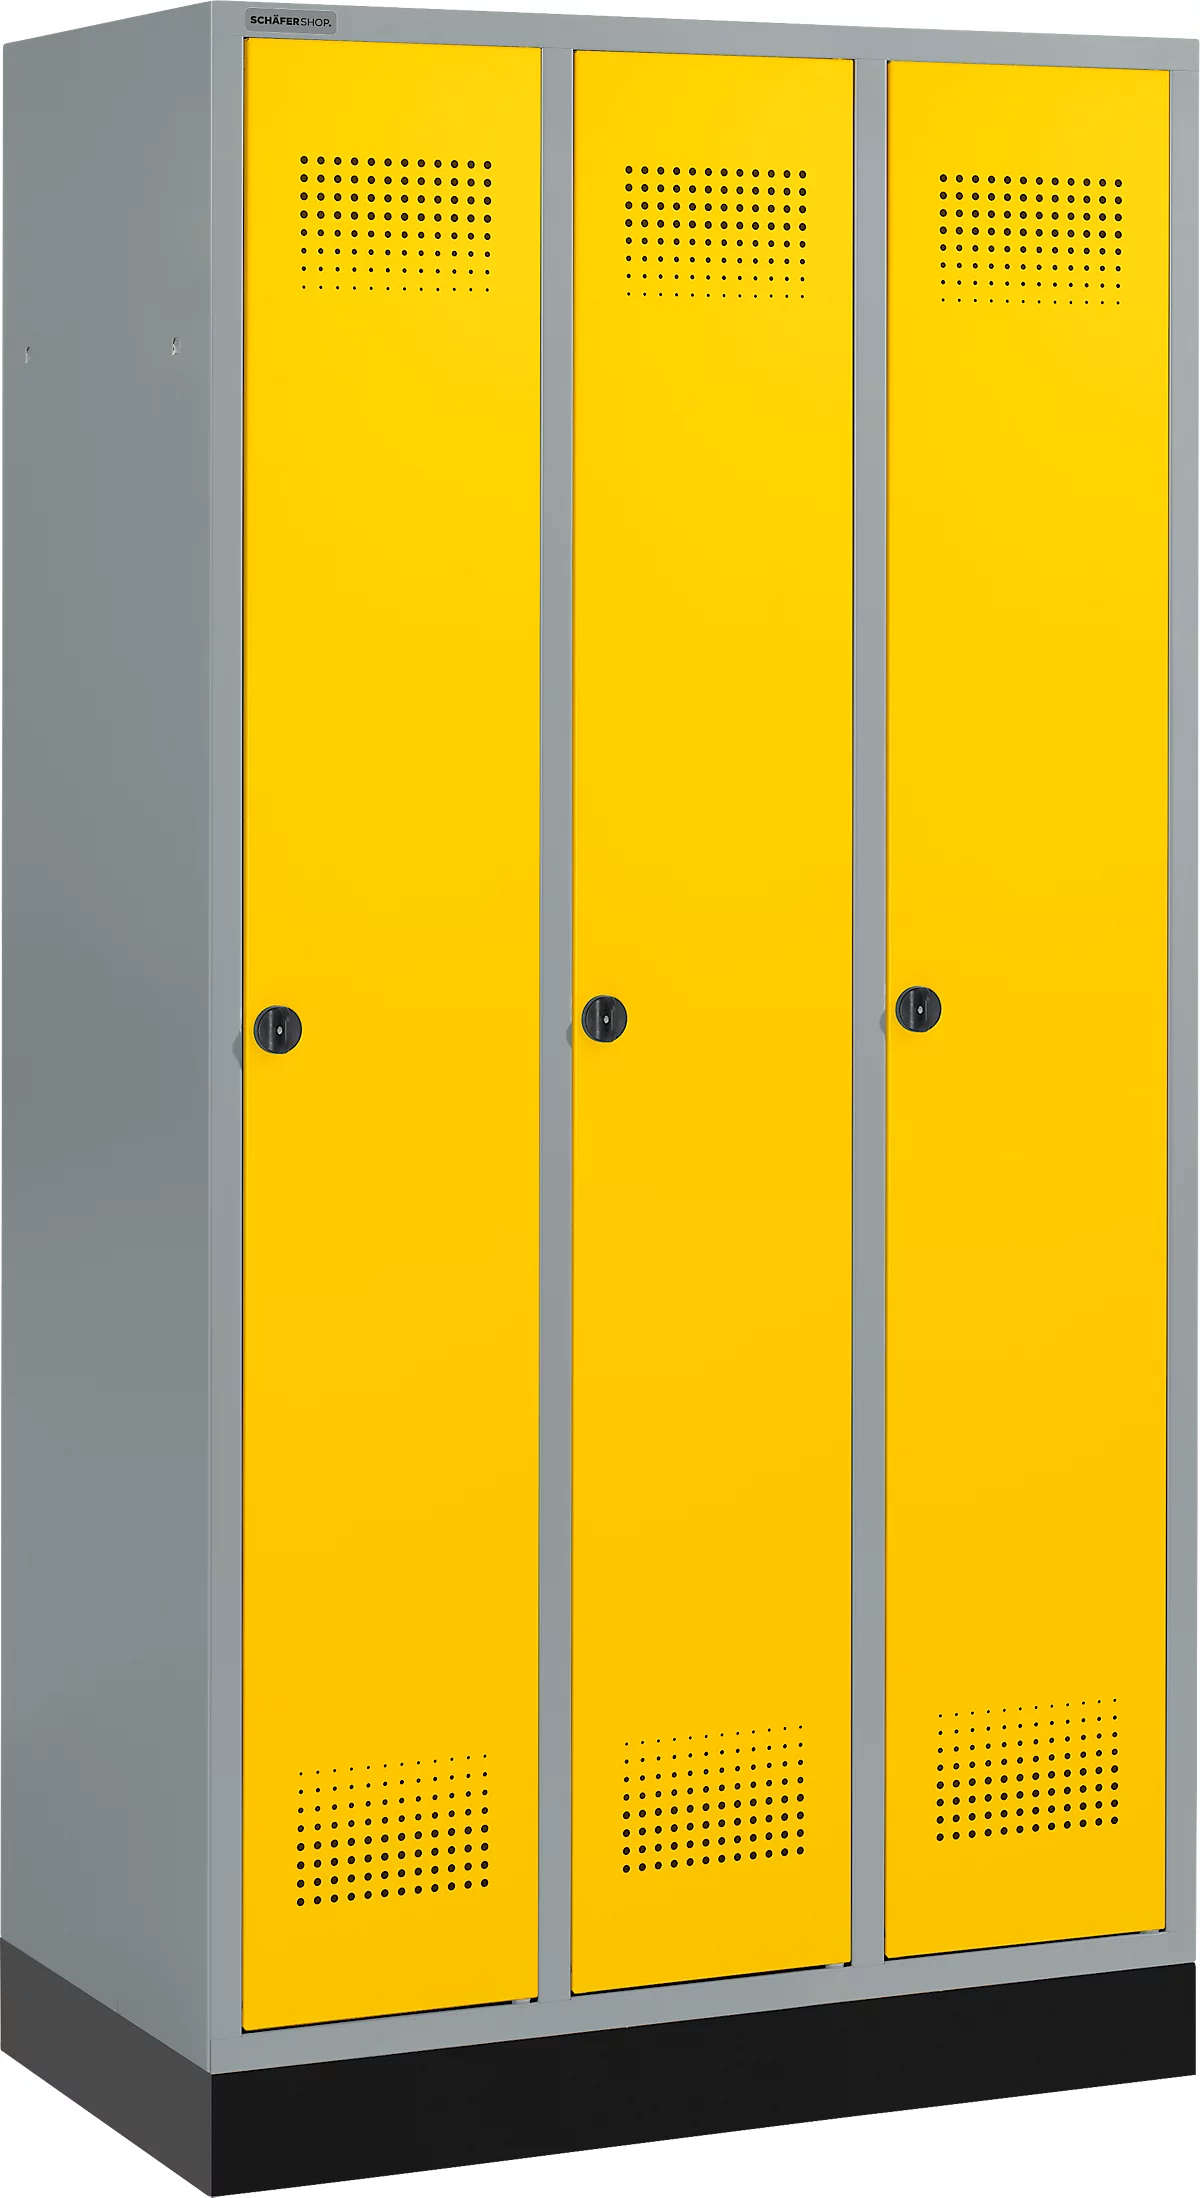 Schäfer Shop Genius Kledinglocker met fitting, 3 compartimenten, veiligheidsdraaigrendelslot, licht zilver/geel